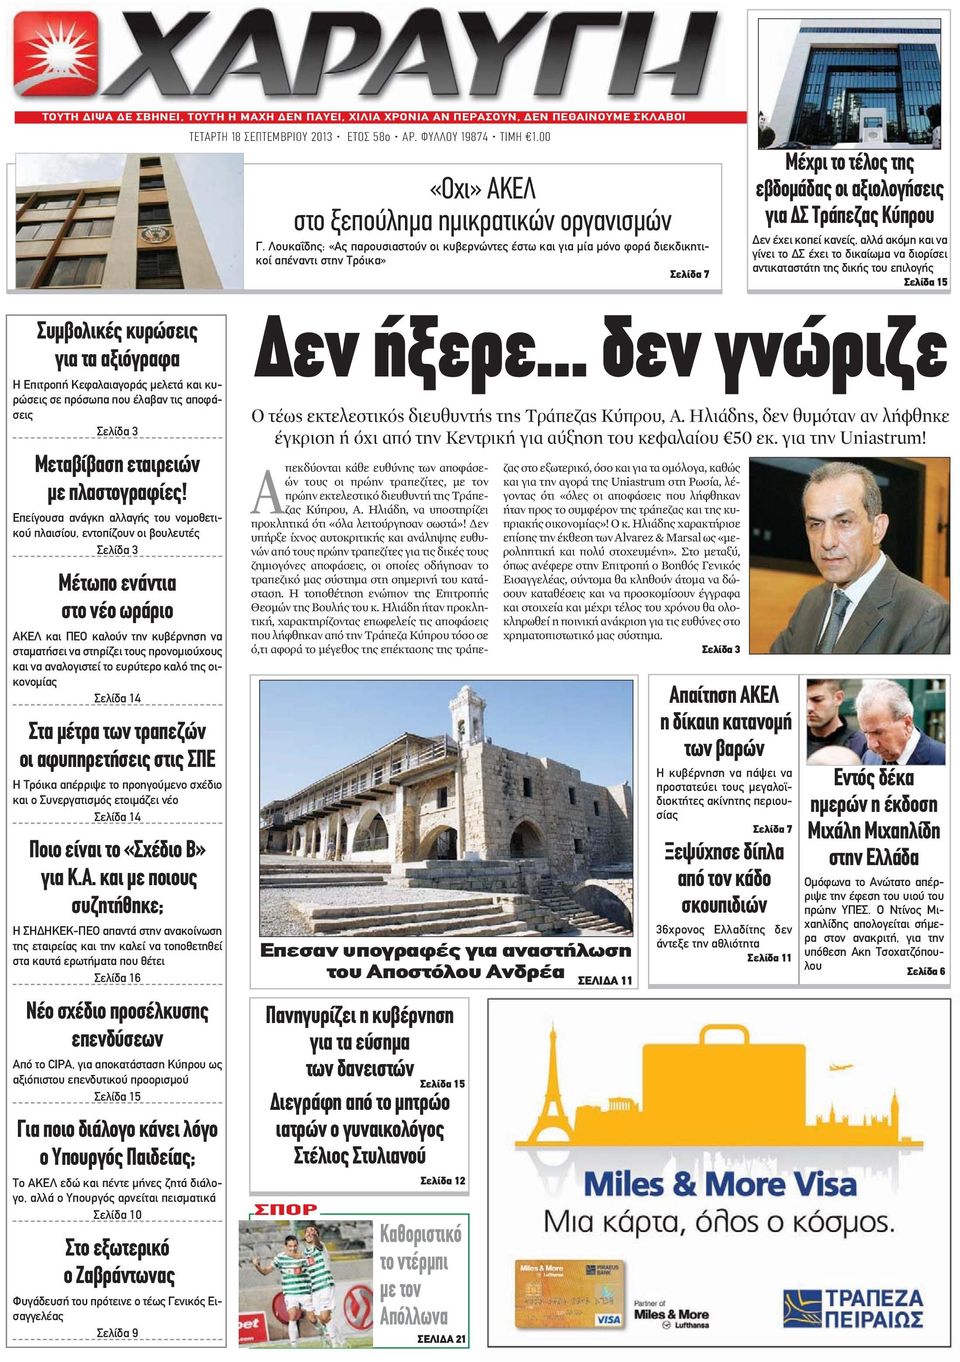 Λουκαΐδης: «Ας παρουσιαστούν οι κυβερνώντες έστω και για μία μόνο φορά διεκδικητικοί απέναντι στην Τρόικα» Σελίδα 7 Μέχρι το τέλος της εβδομάδας οι αξιολογήσεις για ΔΣ Τράπεζας Κύπρου Δεν έχει κοπεί